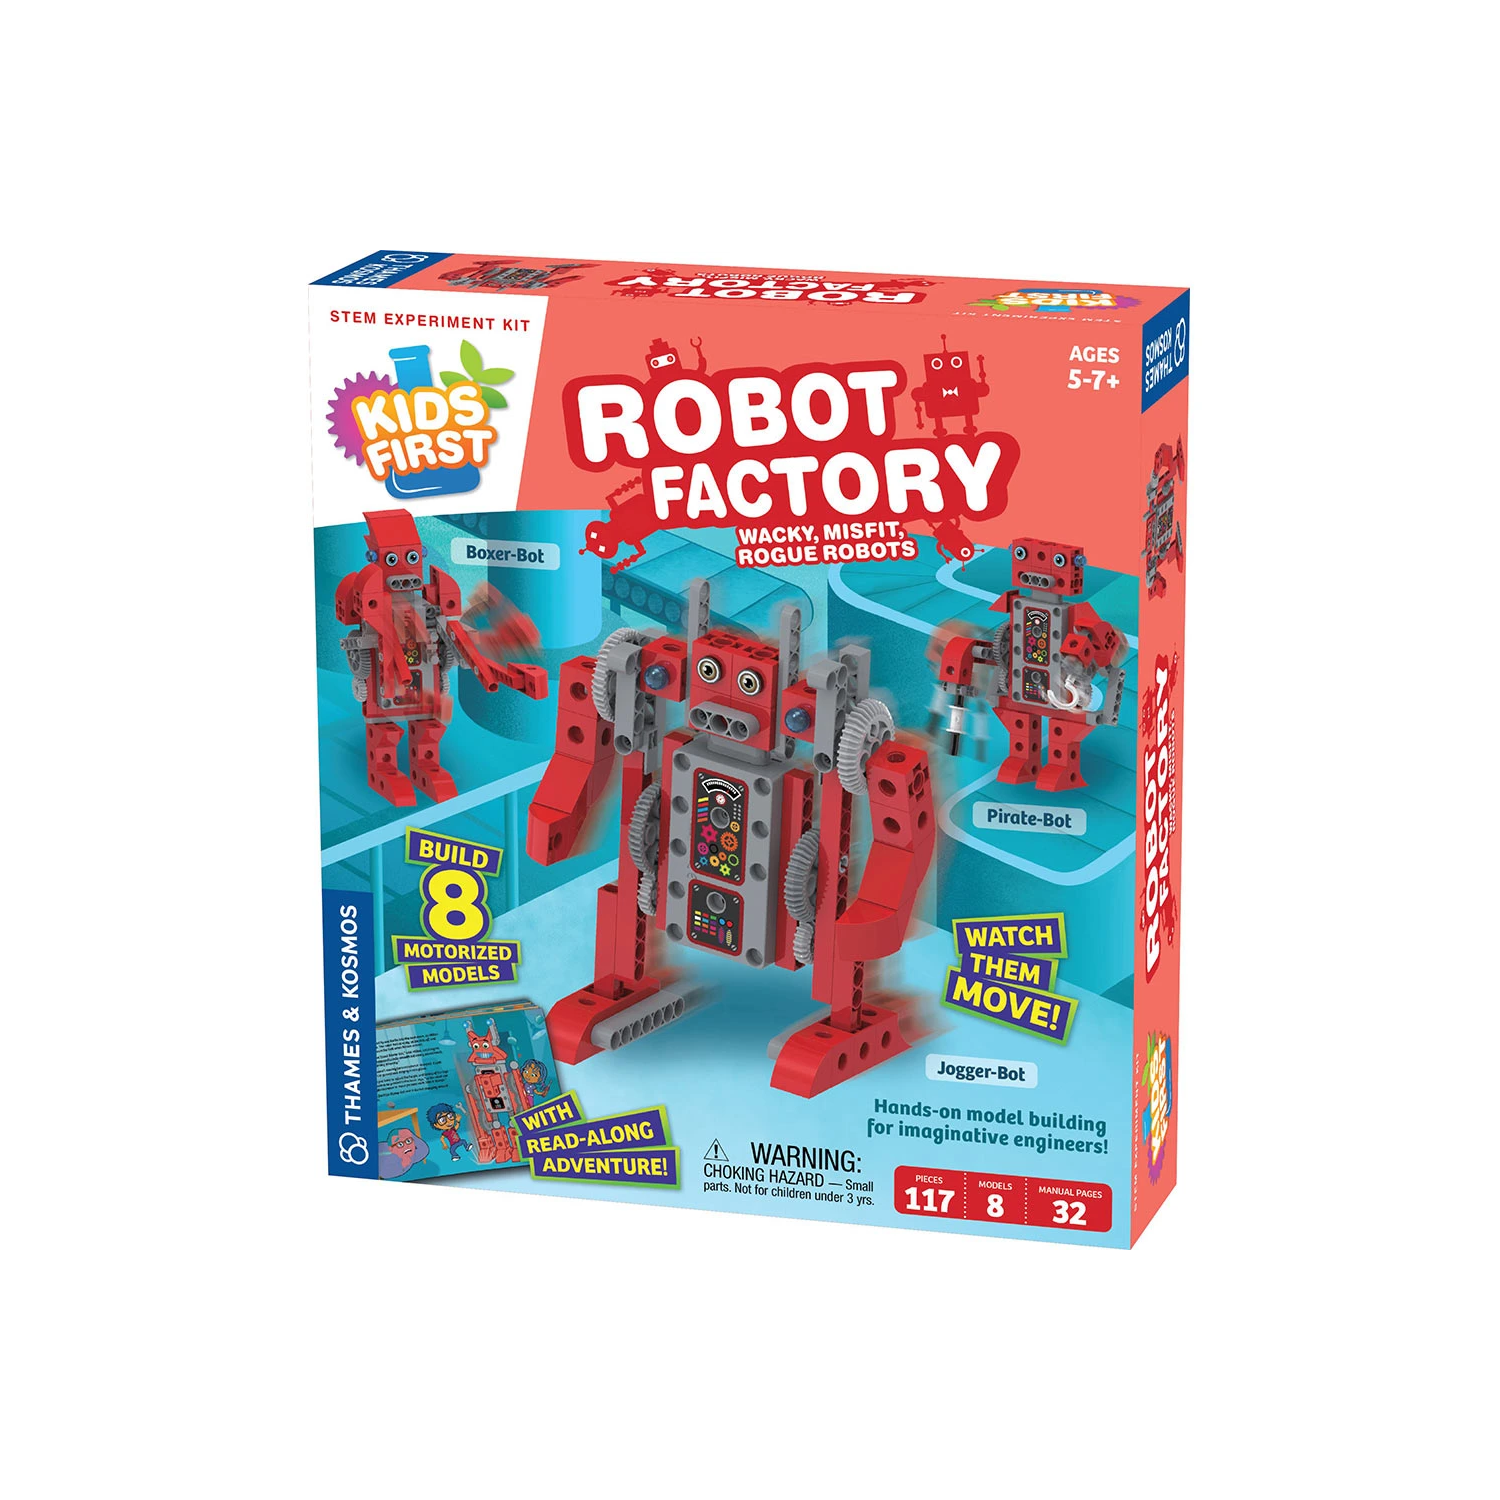 Kids First: Robot Factory- Wacky, Misfit, Rogue Robots